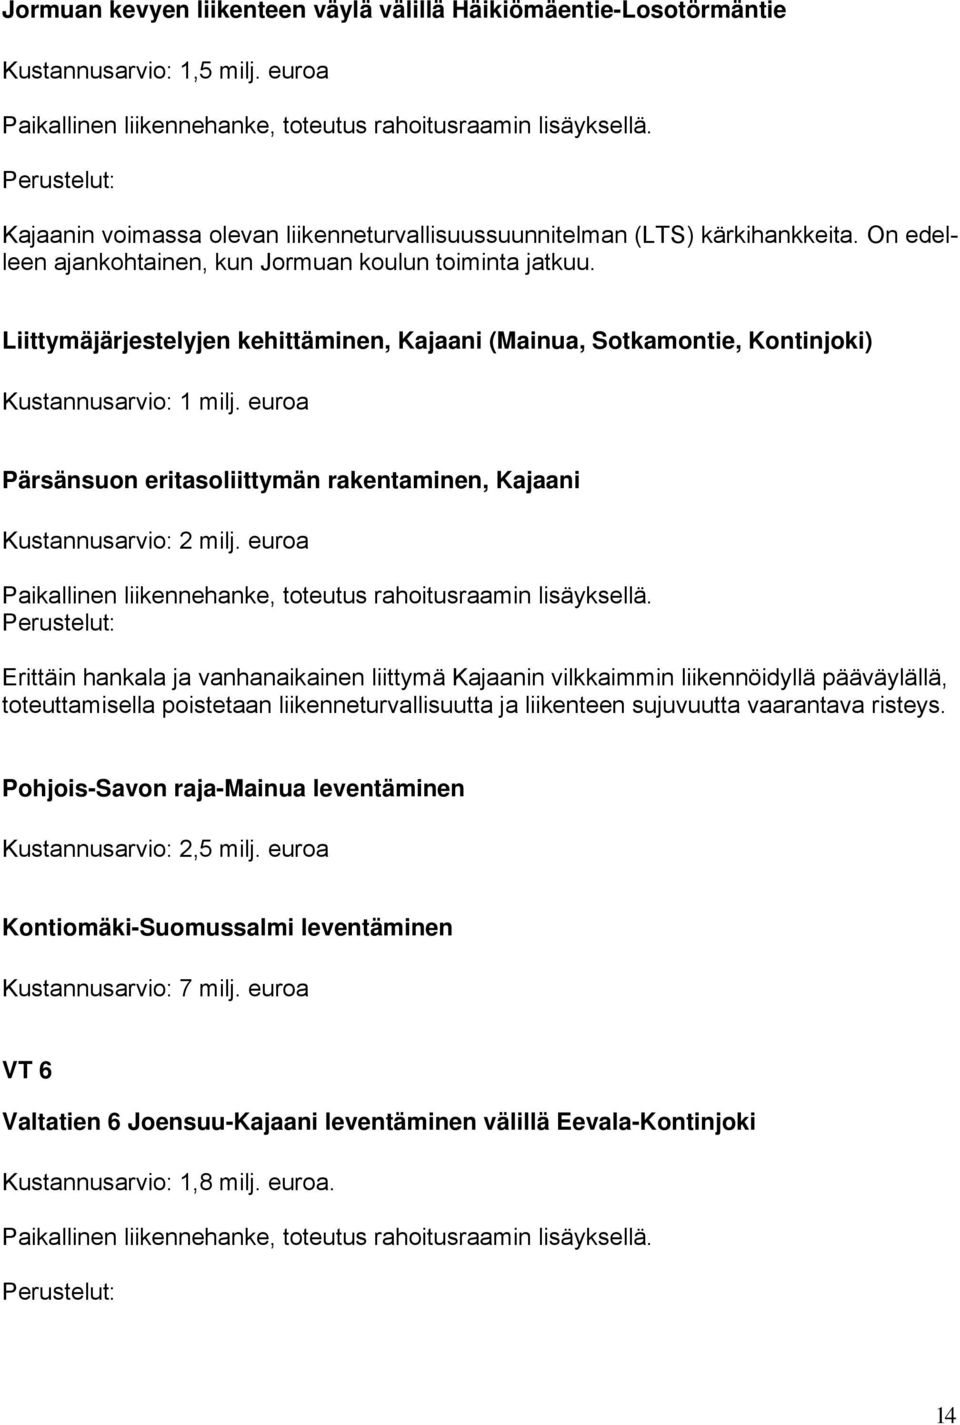 Liittymäjärjestelyjen kehittäminen, Kajaani (Mainua, Sotkamontie, Kontinjoki) Kustannusarvio: 1 milj. euroa Pärsänsuon eritasoliittymän rakentaminen, Kajaani Kustannusarvio: 2 milj.